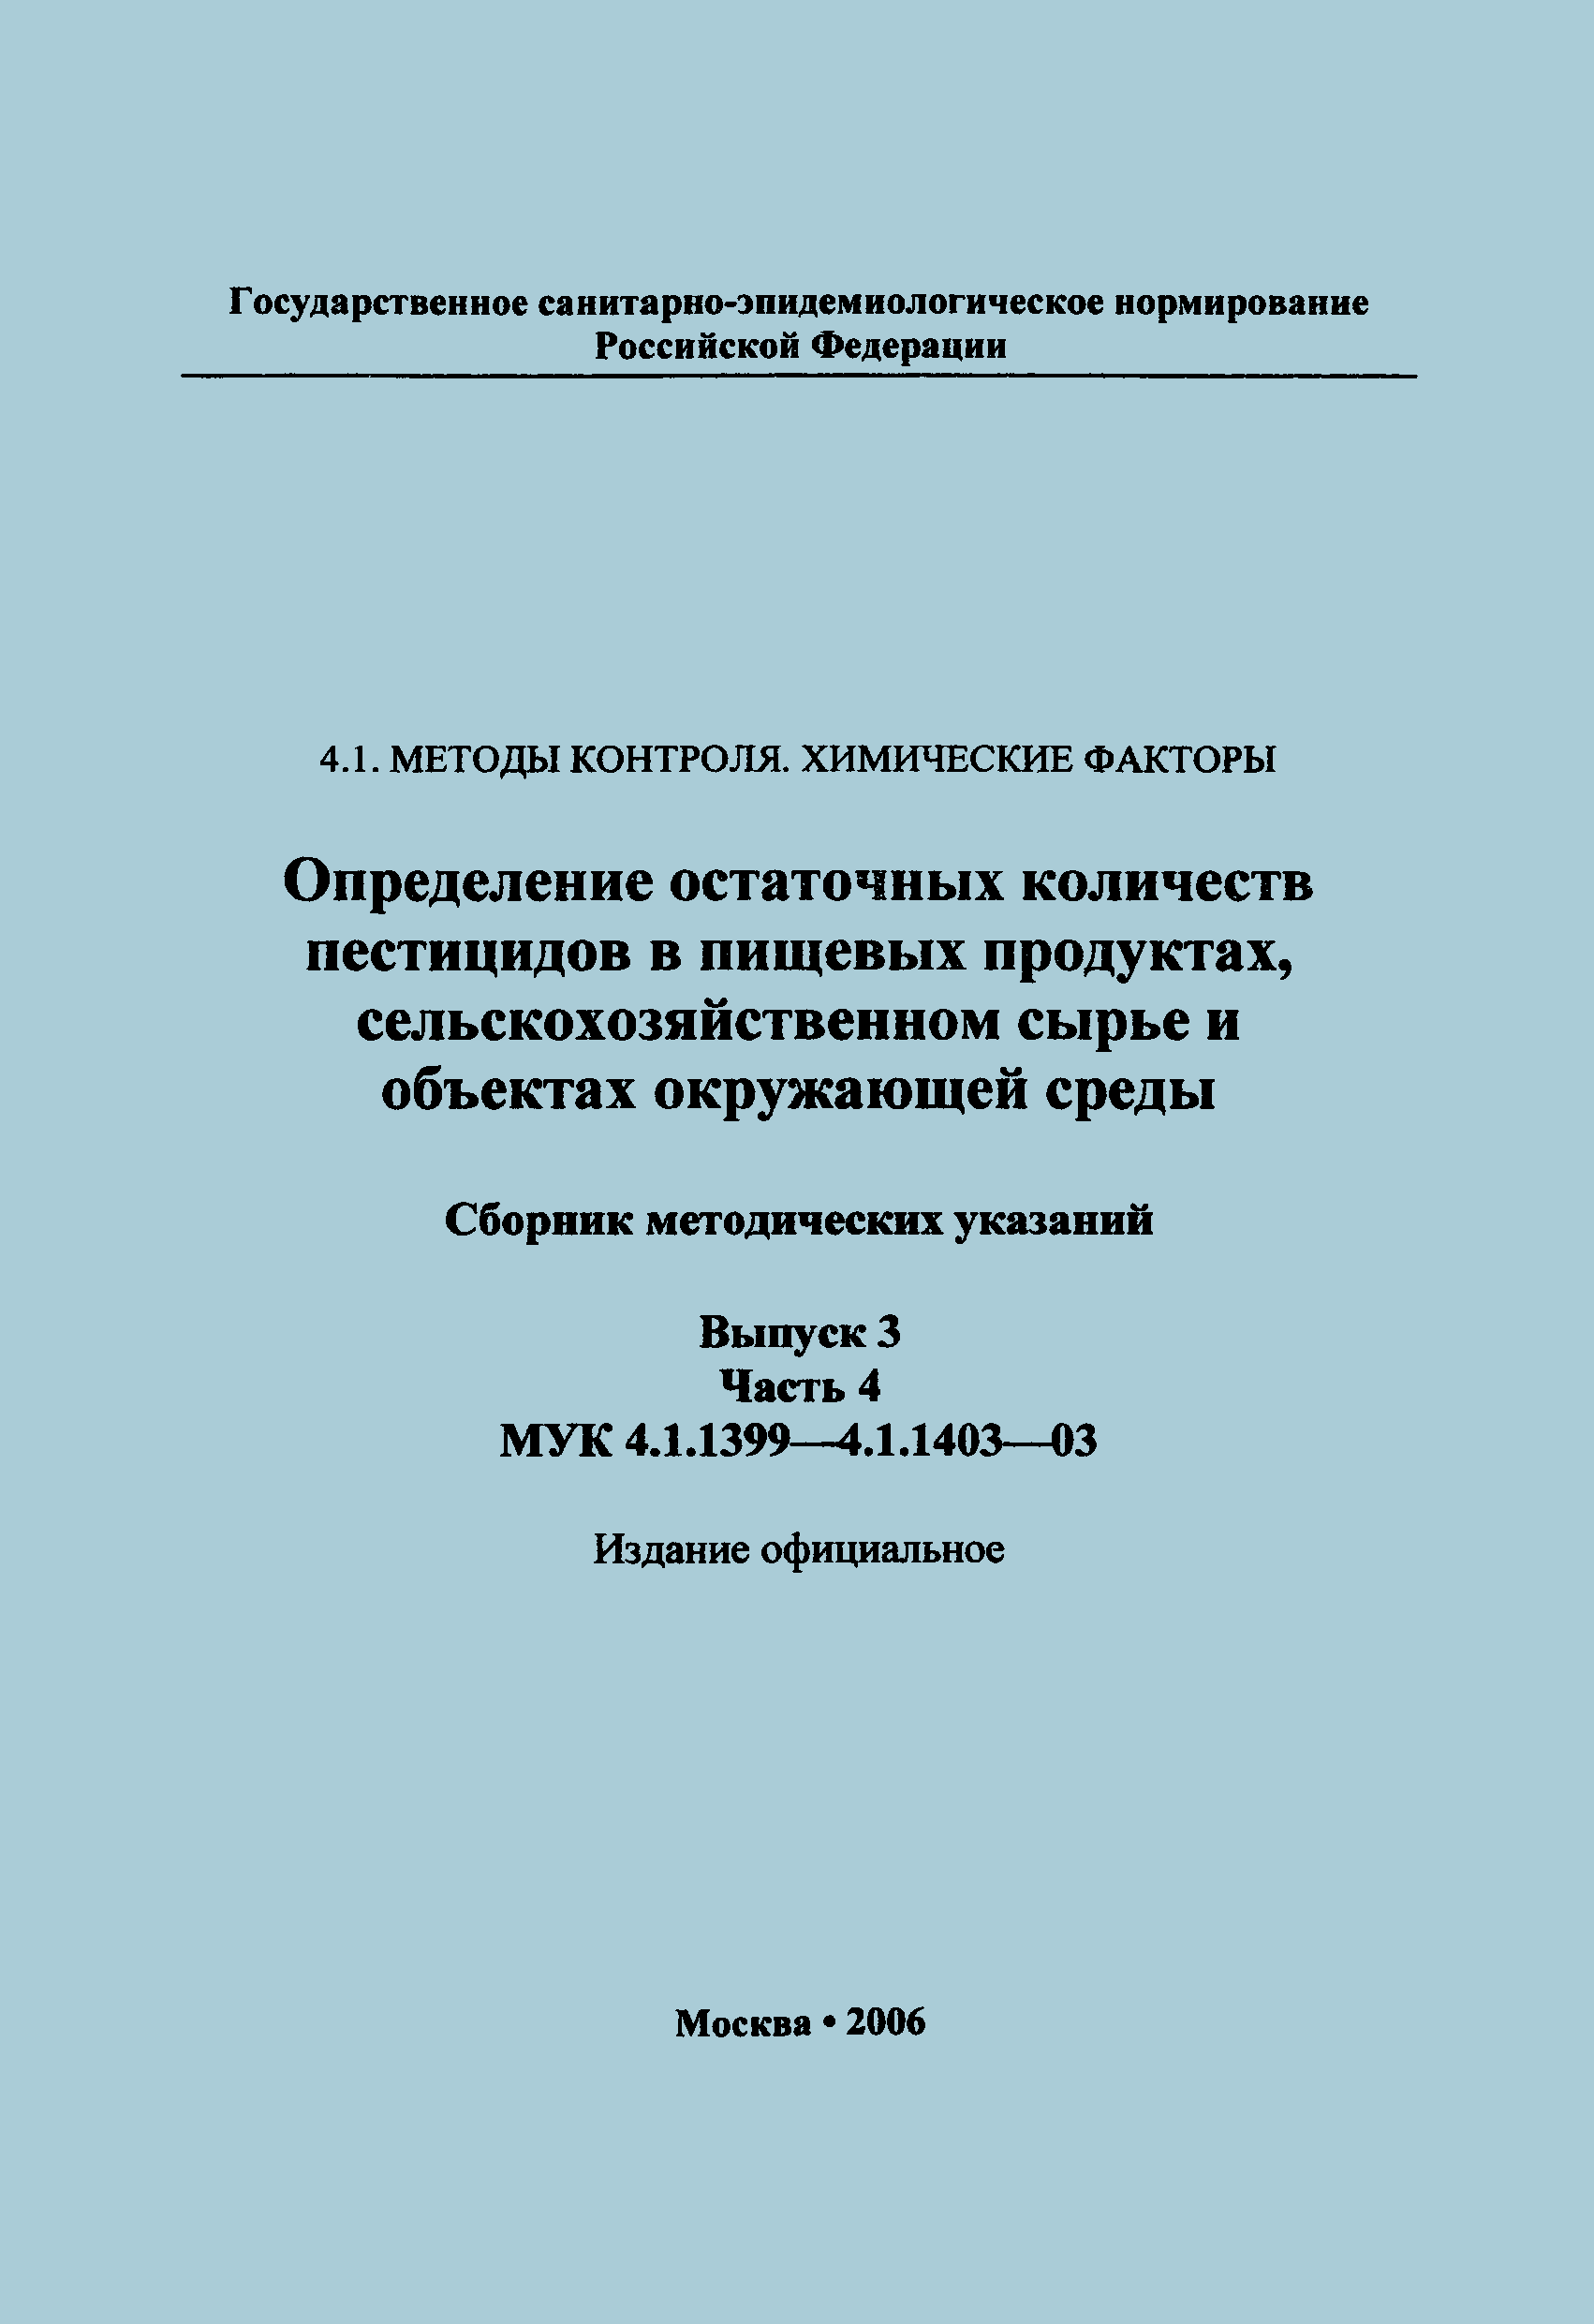 МУК 4.1.1402-03